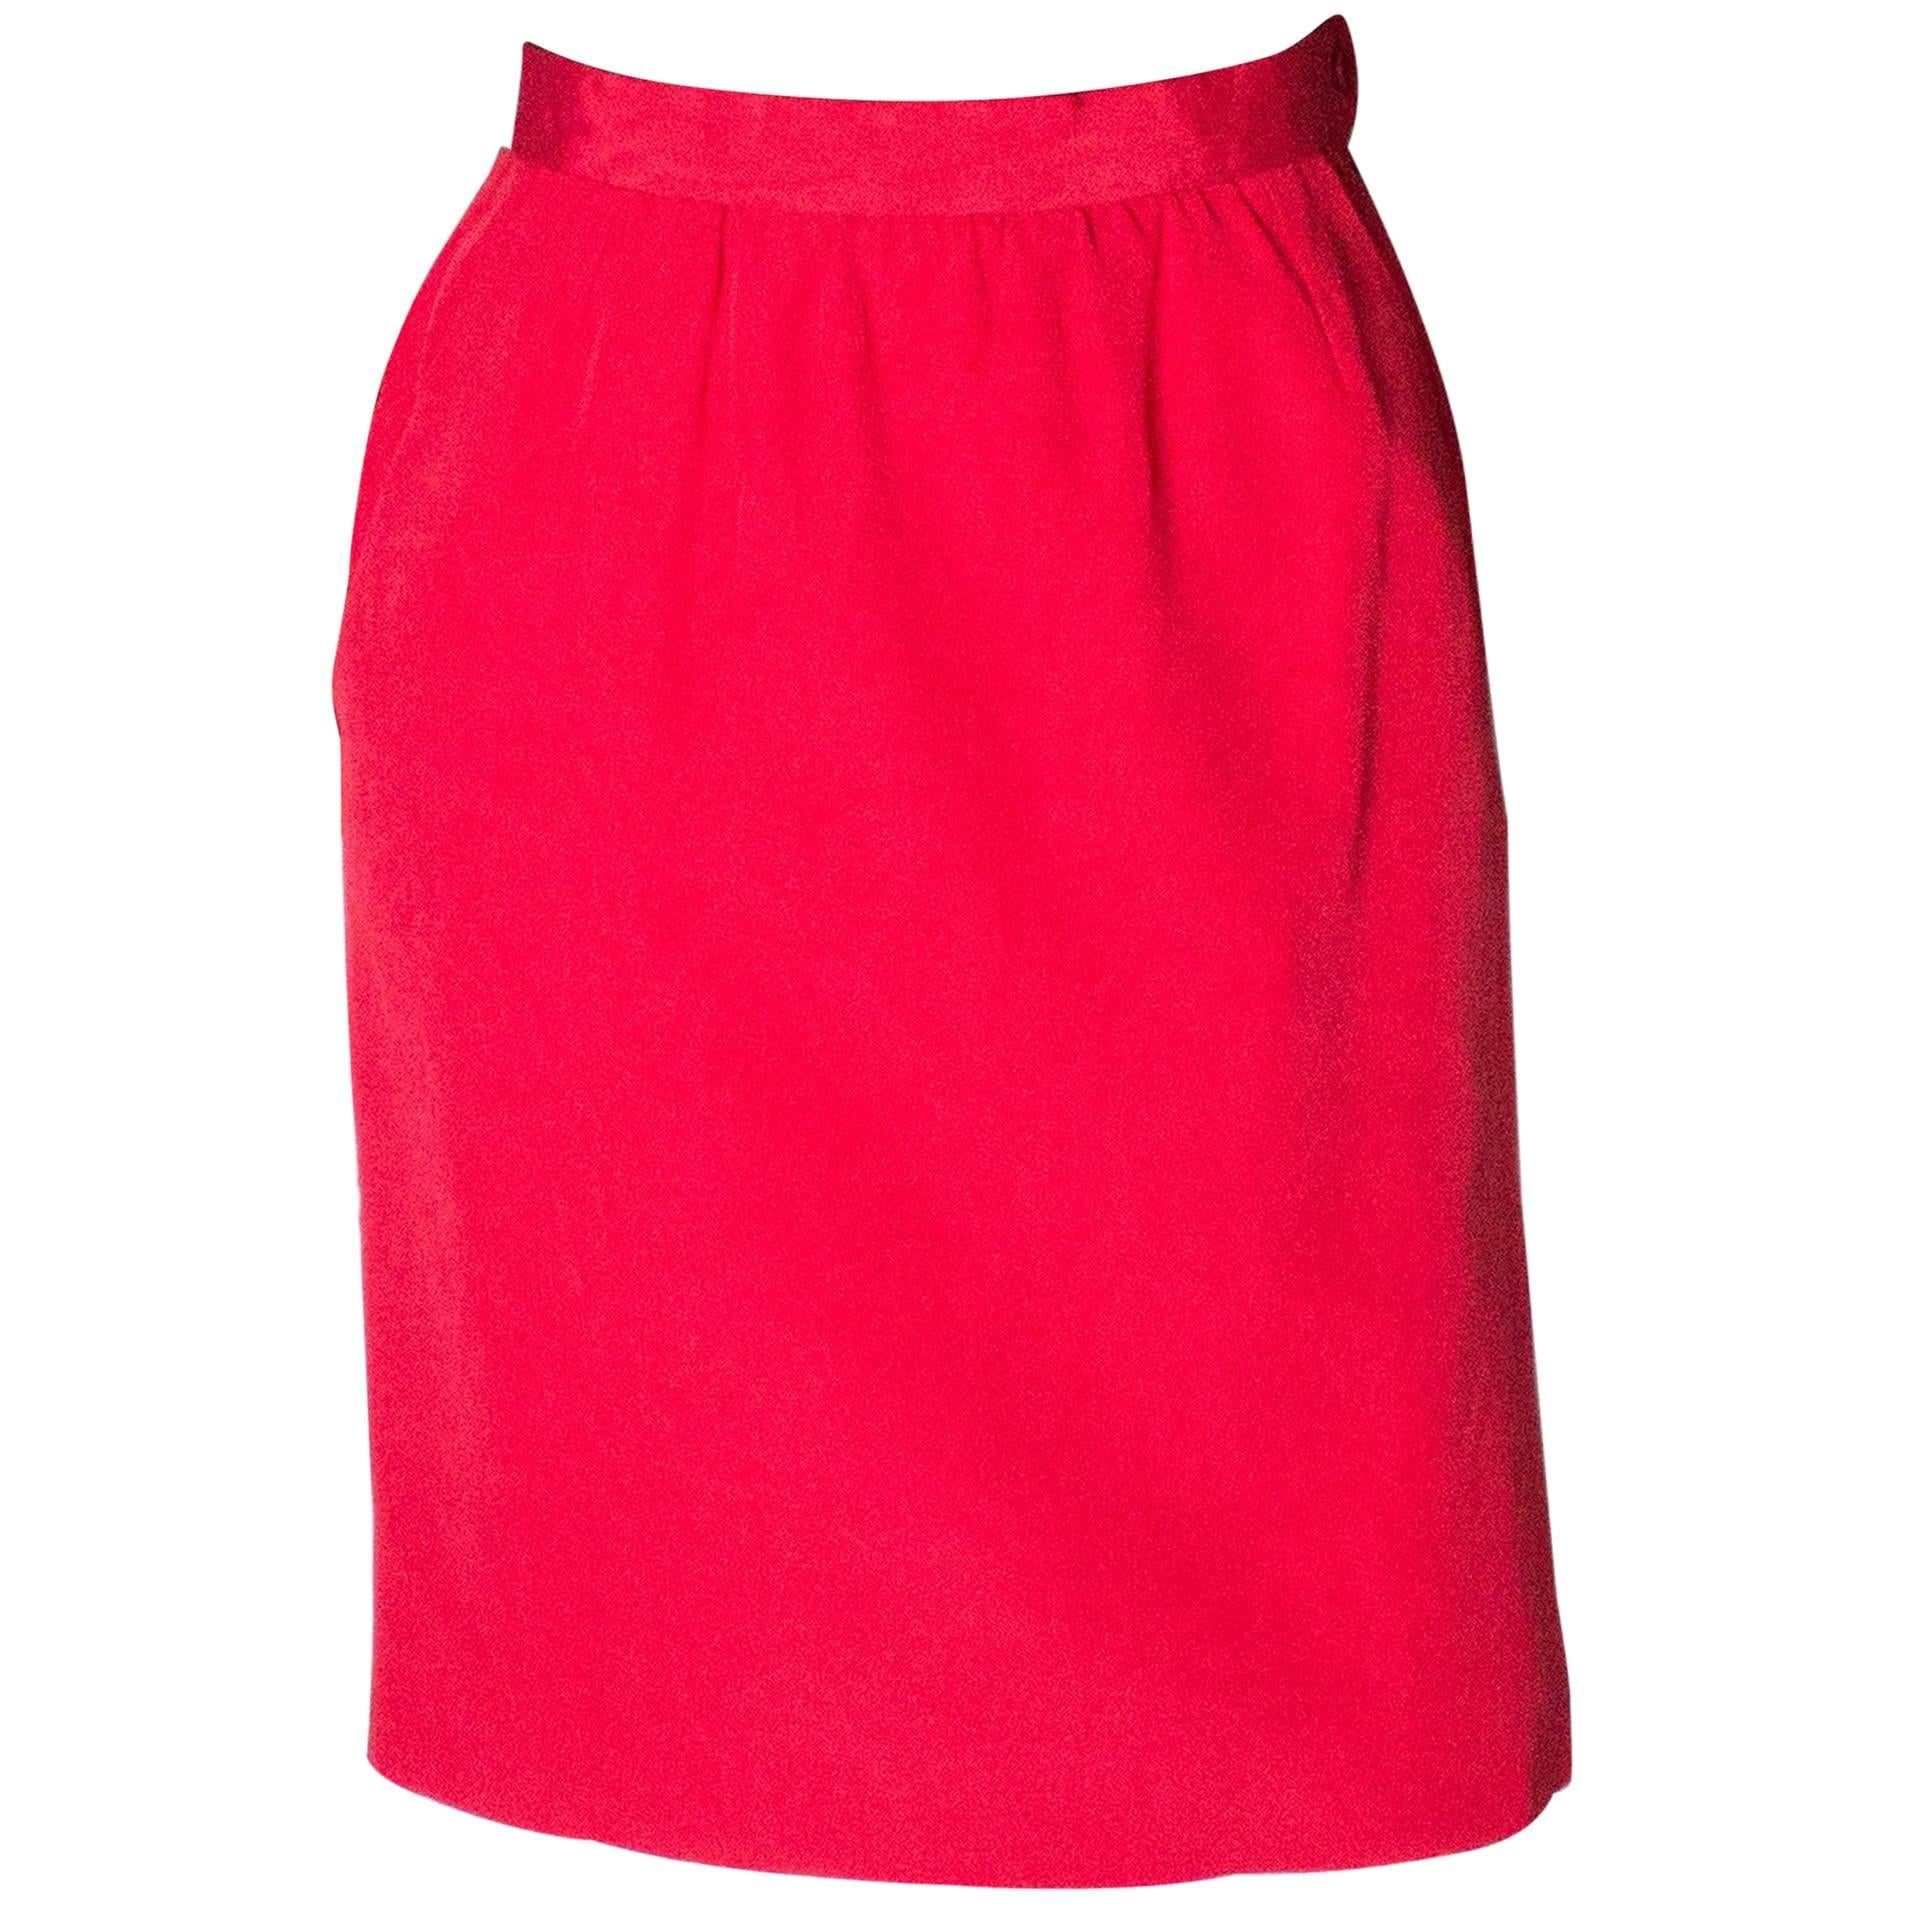 Yves Saint Laurent Vintage Rive Gauche Red Skirt